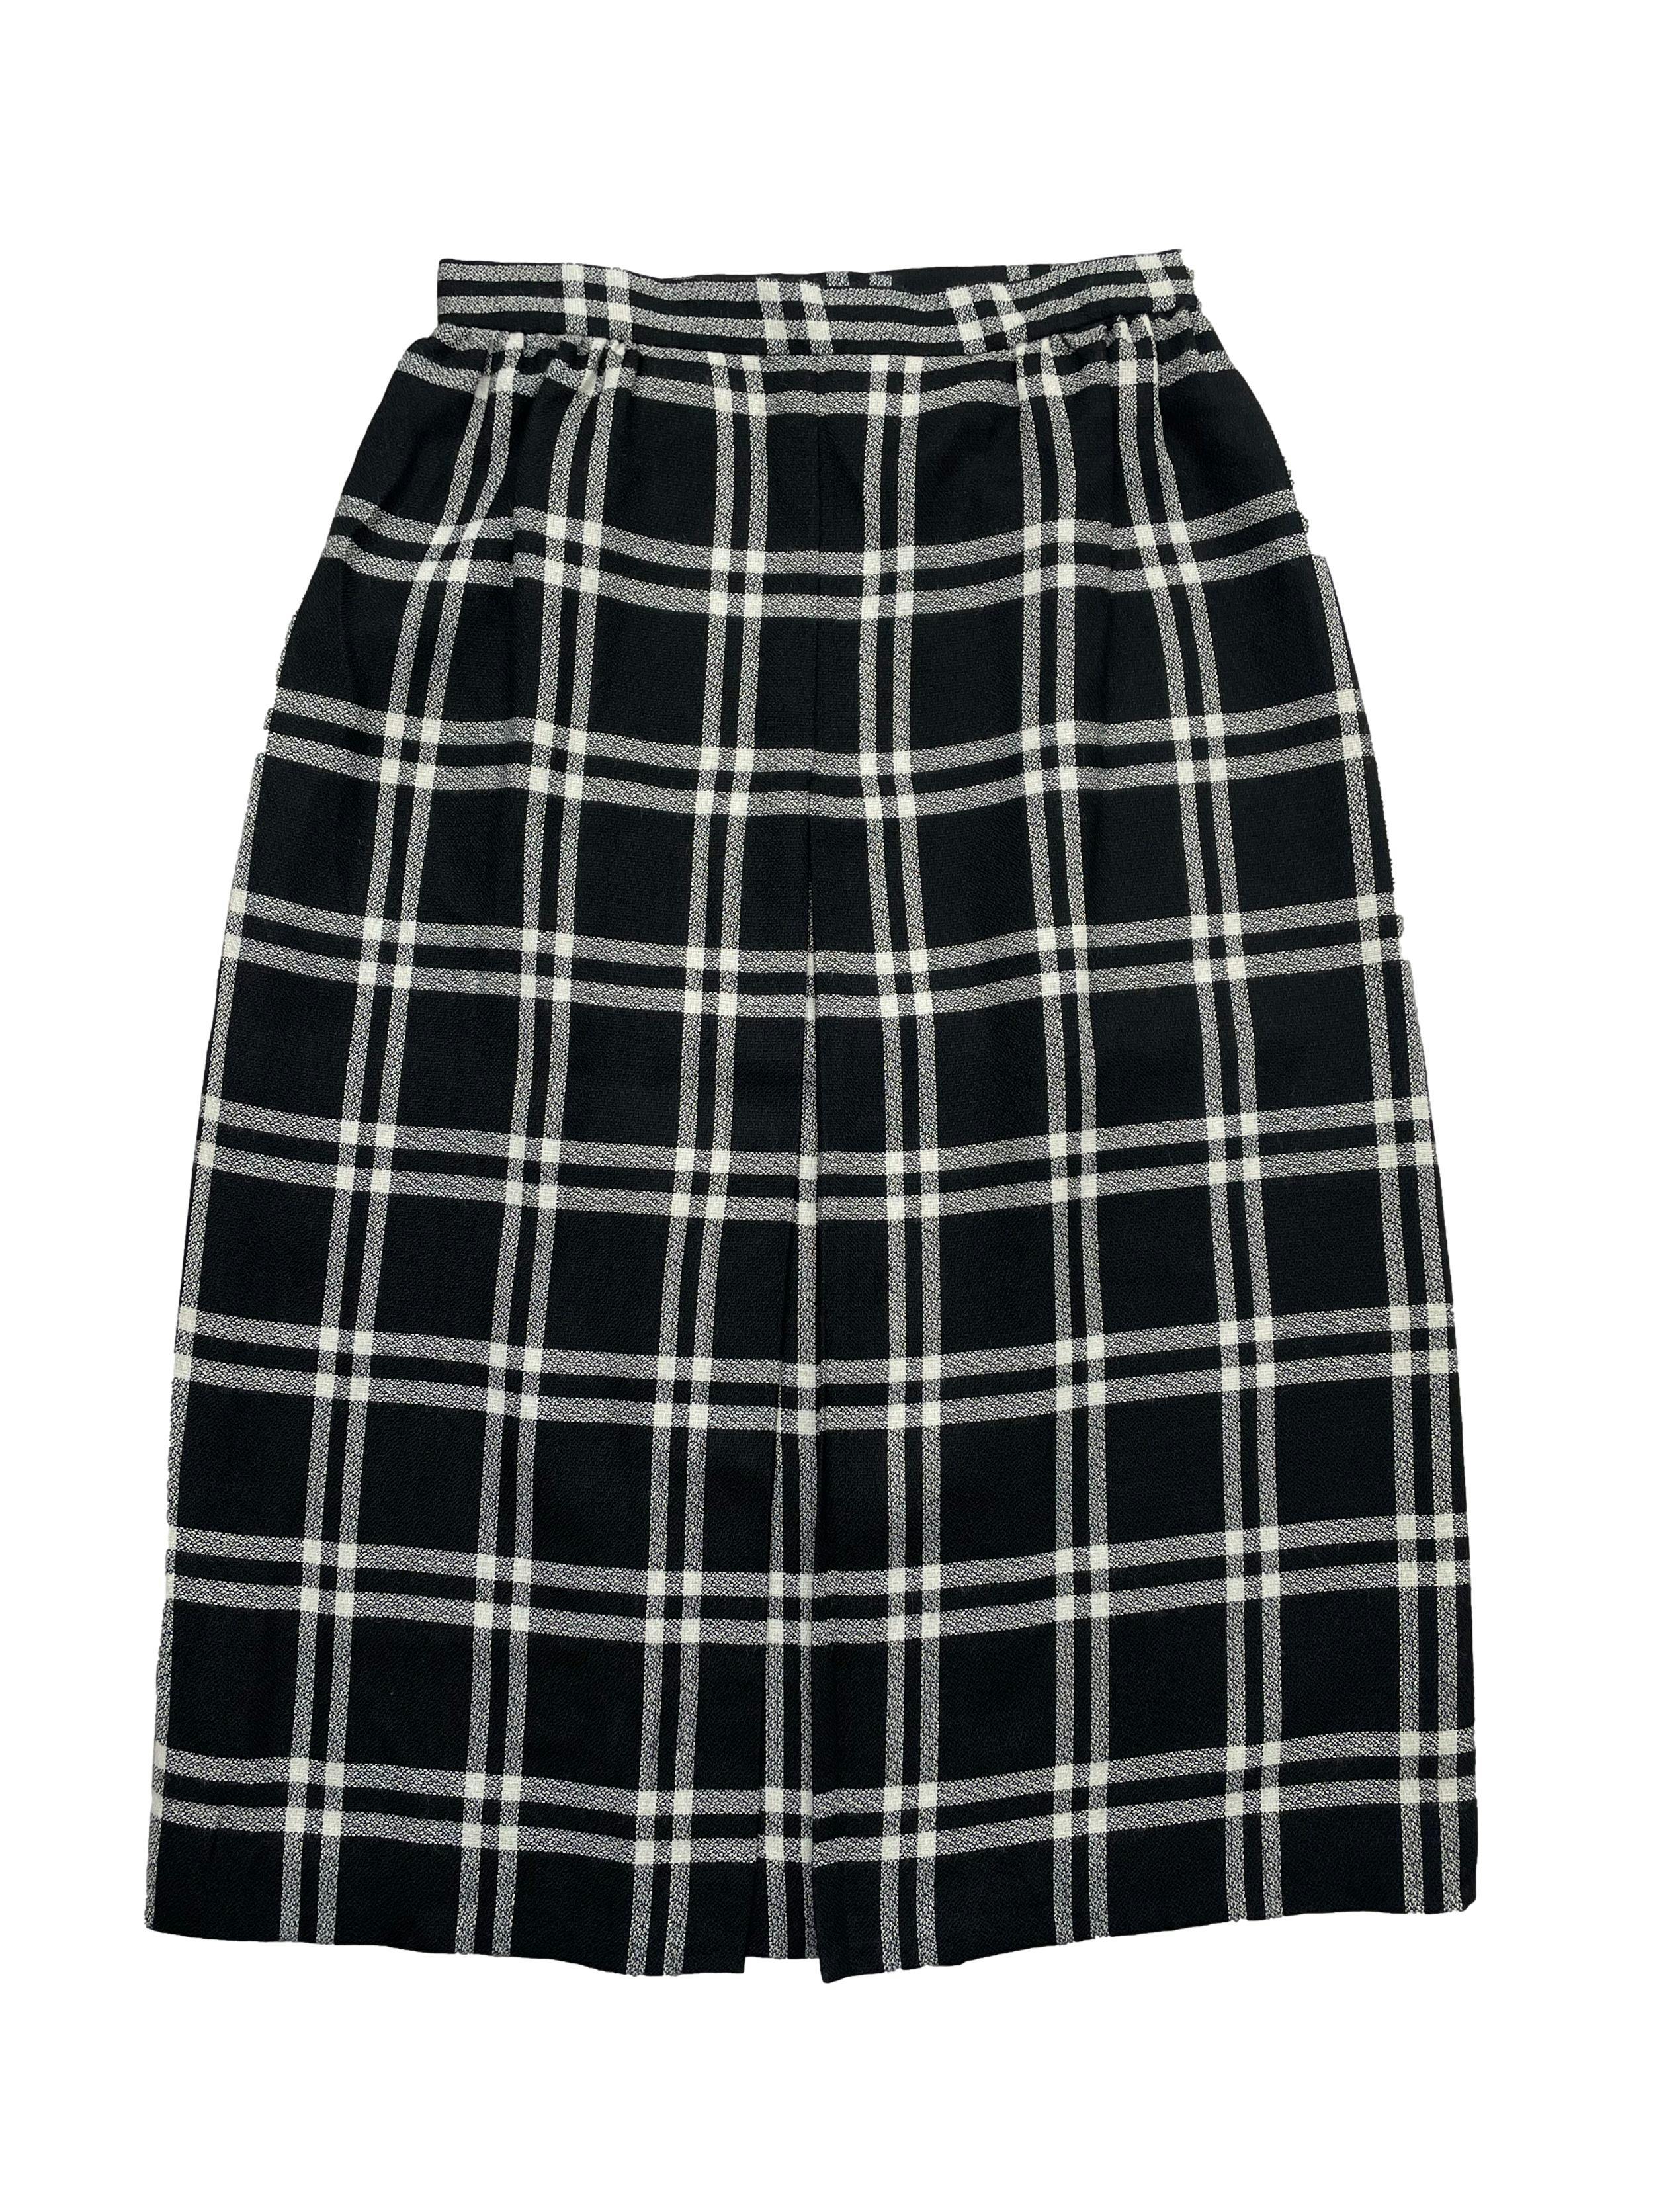 Falda midi vintage, estampado escoces en blanco y negro , pliegue central y cierre posterior. Cintura 66cm, Largo 69cm.